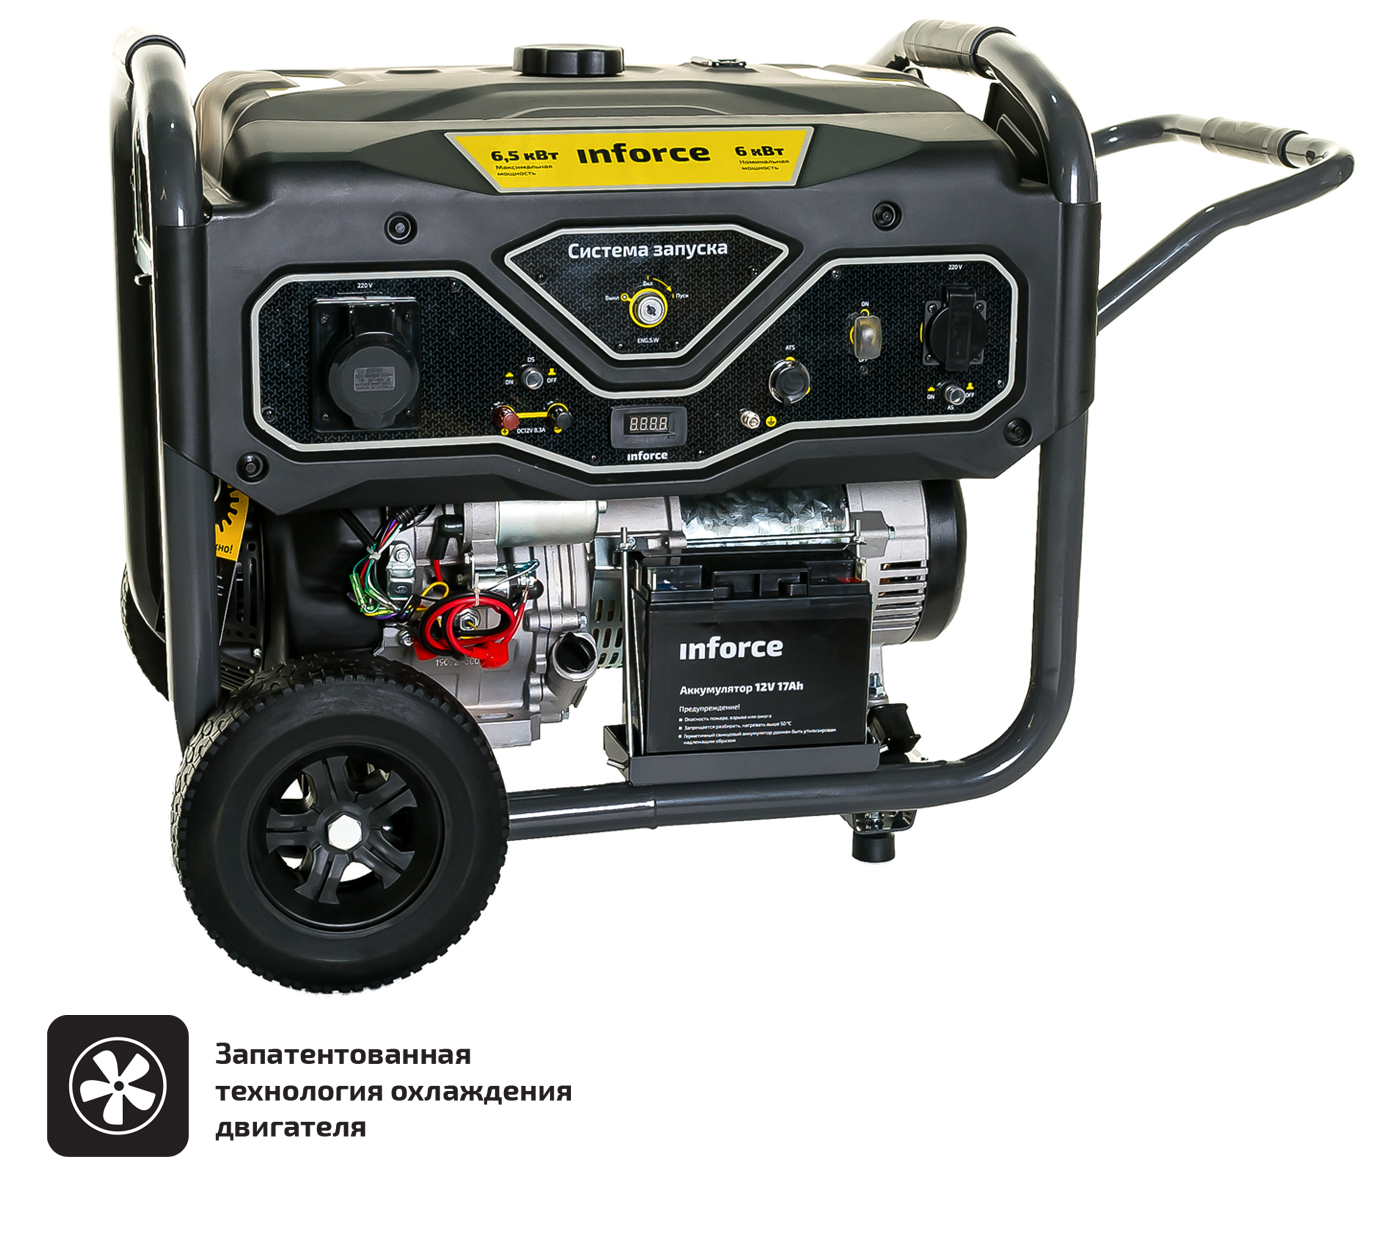 Бензиновый генератор с возможностью подключения блока автоматики Inforce GL 6500 04-03-15 генератор бензиновый megavolt hh 6500 а